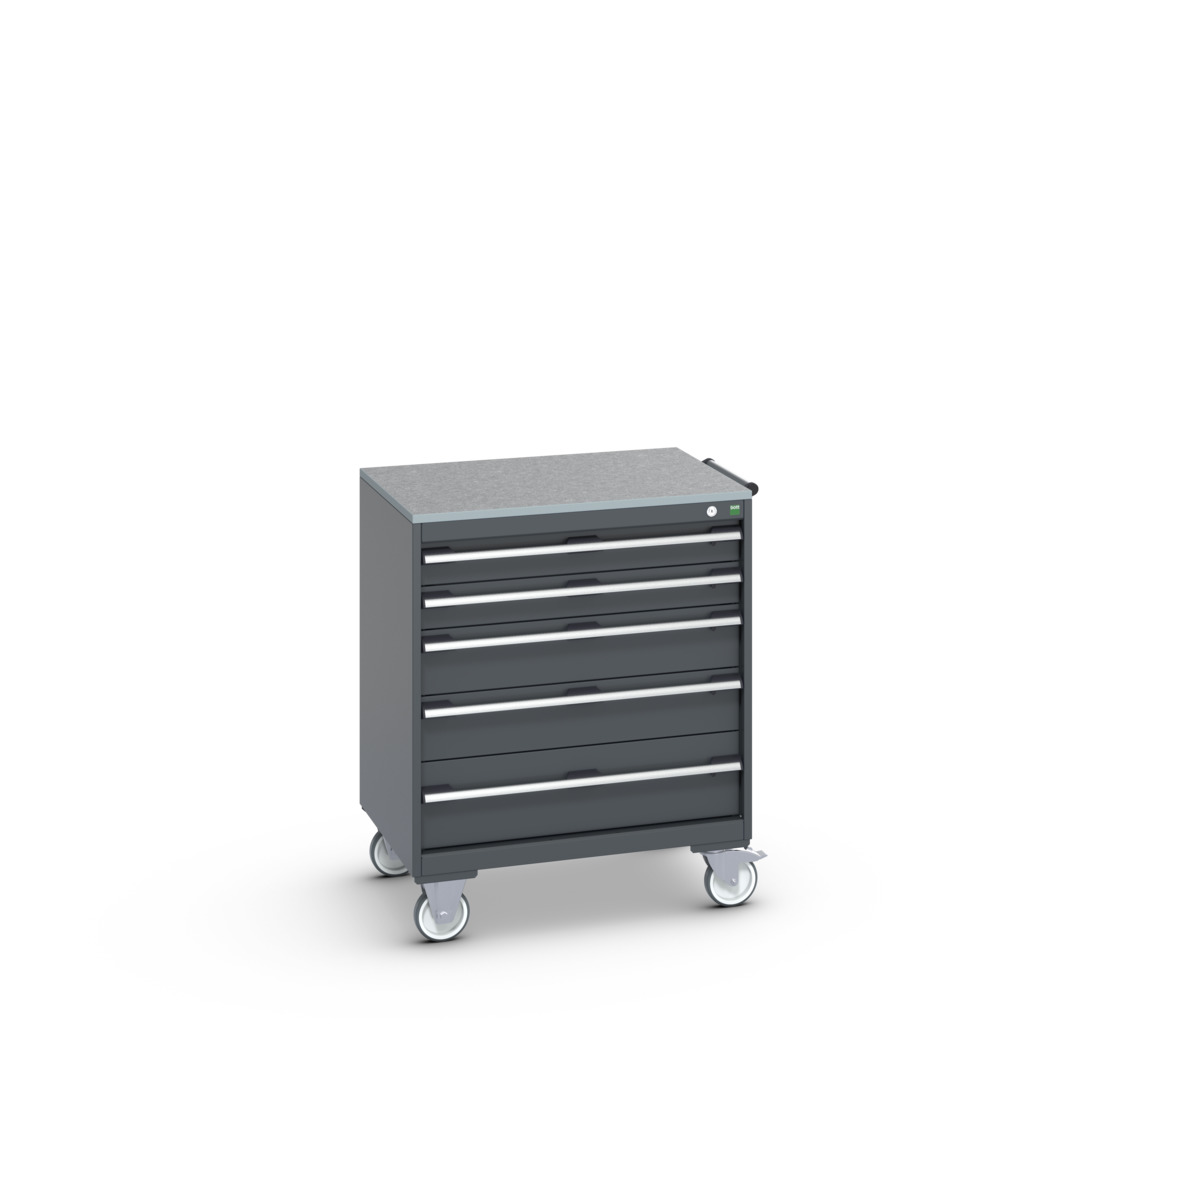 40402158.77V - cubio mobile cabinet